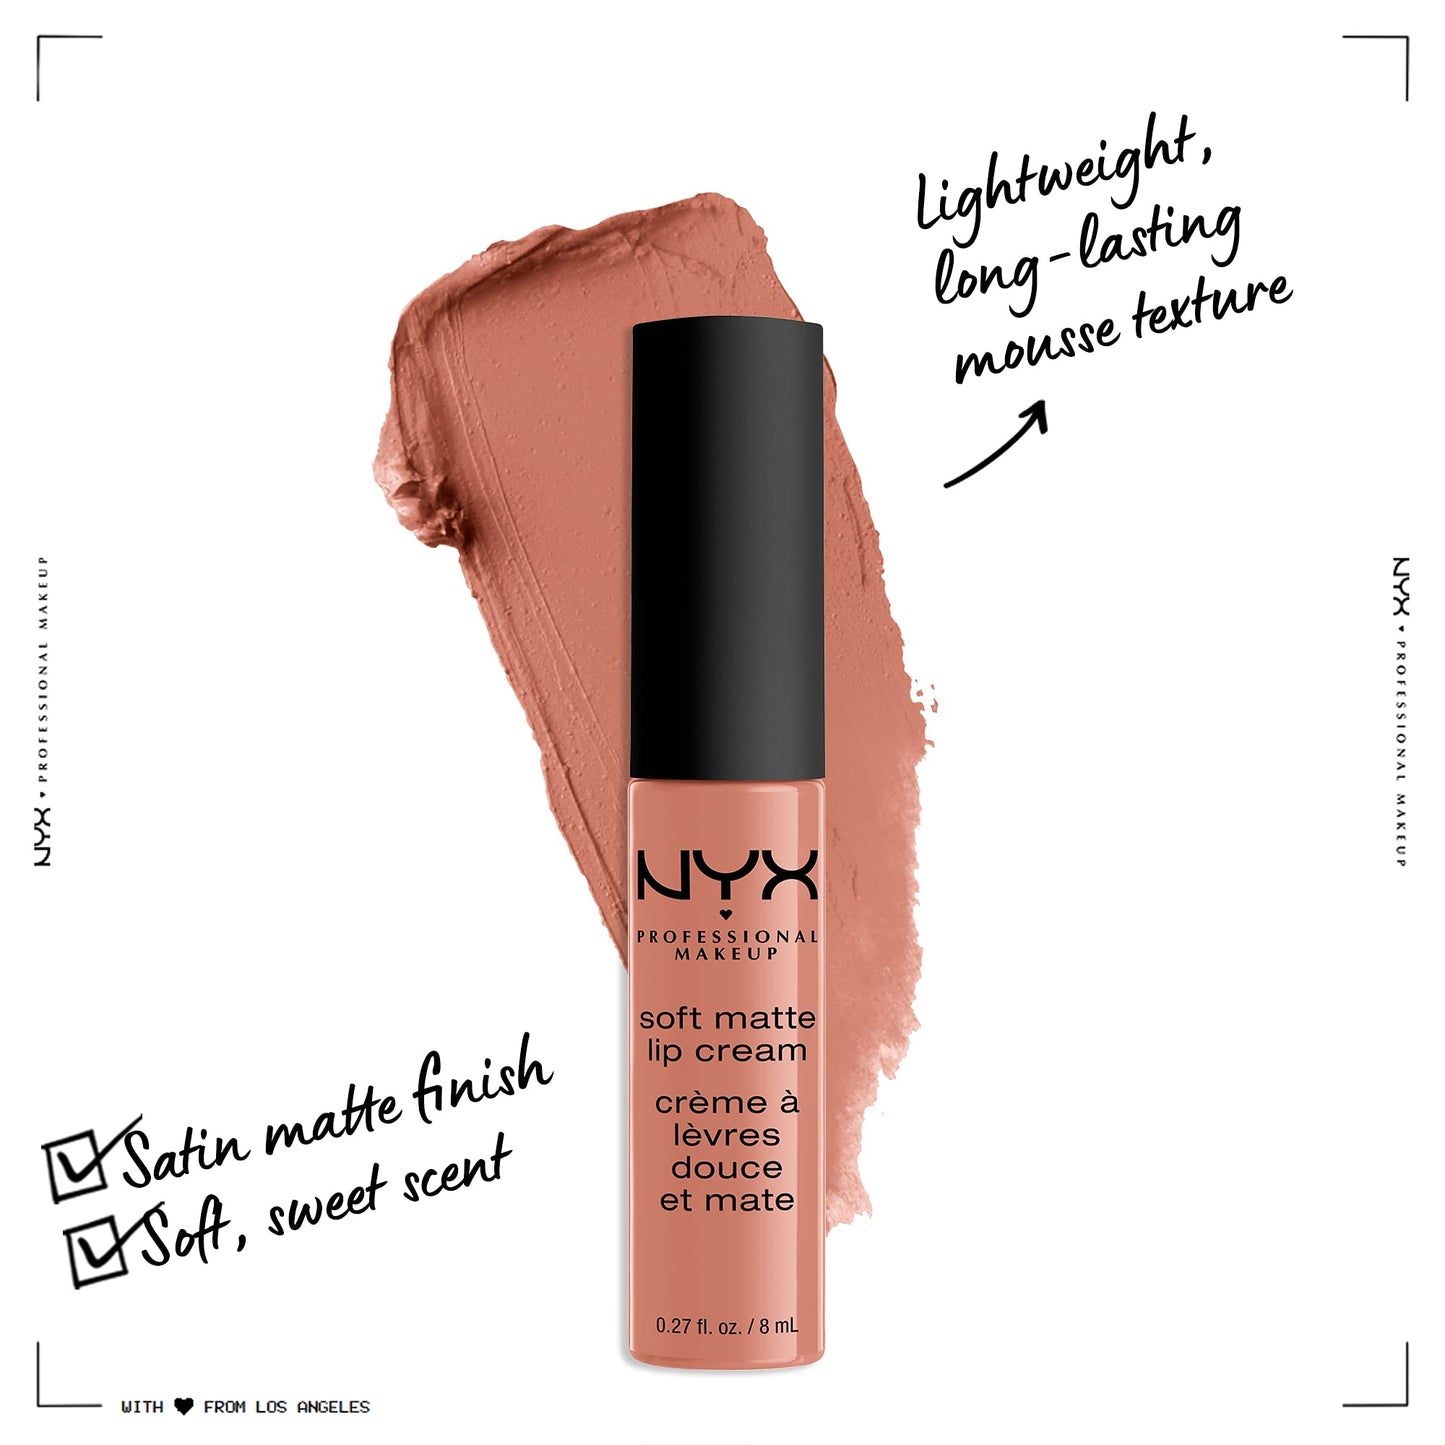 NYX PROFESSIONAL MAKEUP Soft Matte Lip Cream, Lightweight Liquid Lipstick - Athens (Matte Peach Beige)